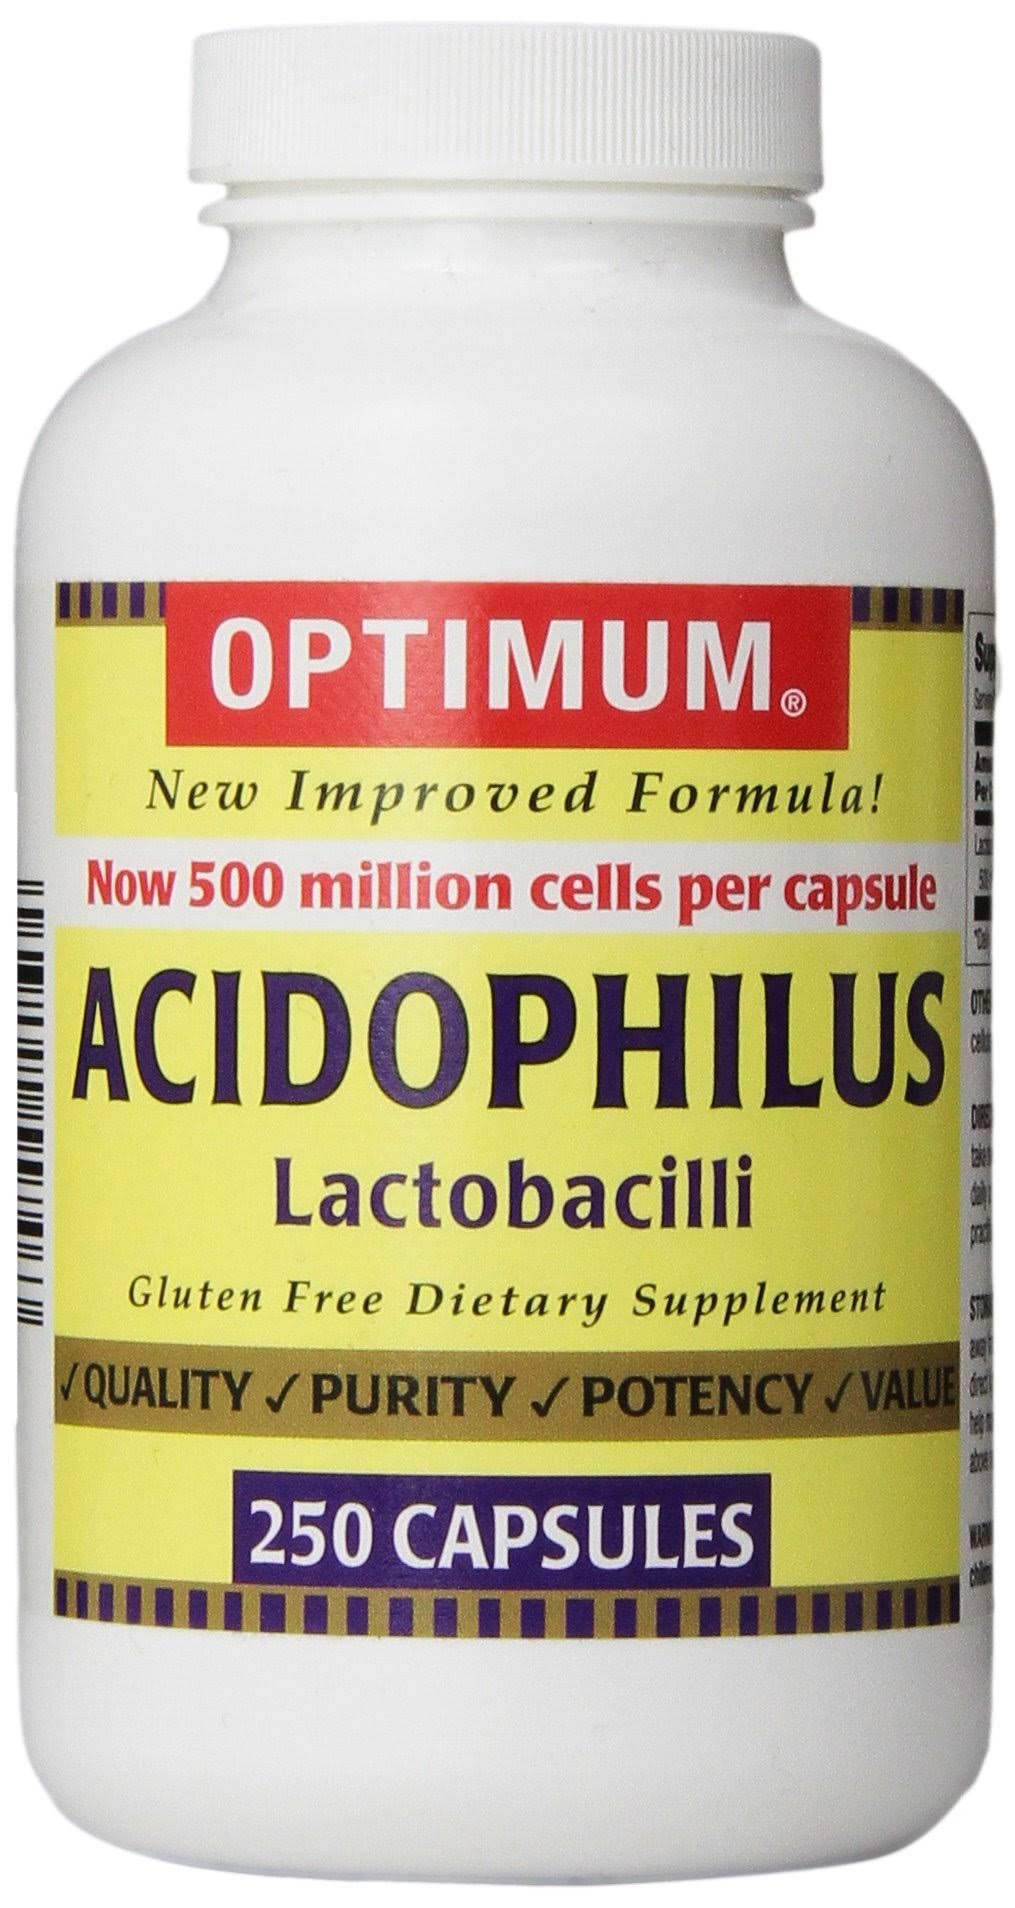 Optimum Acidophilus Lactobacilli Capsules - 250ct